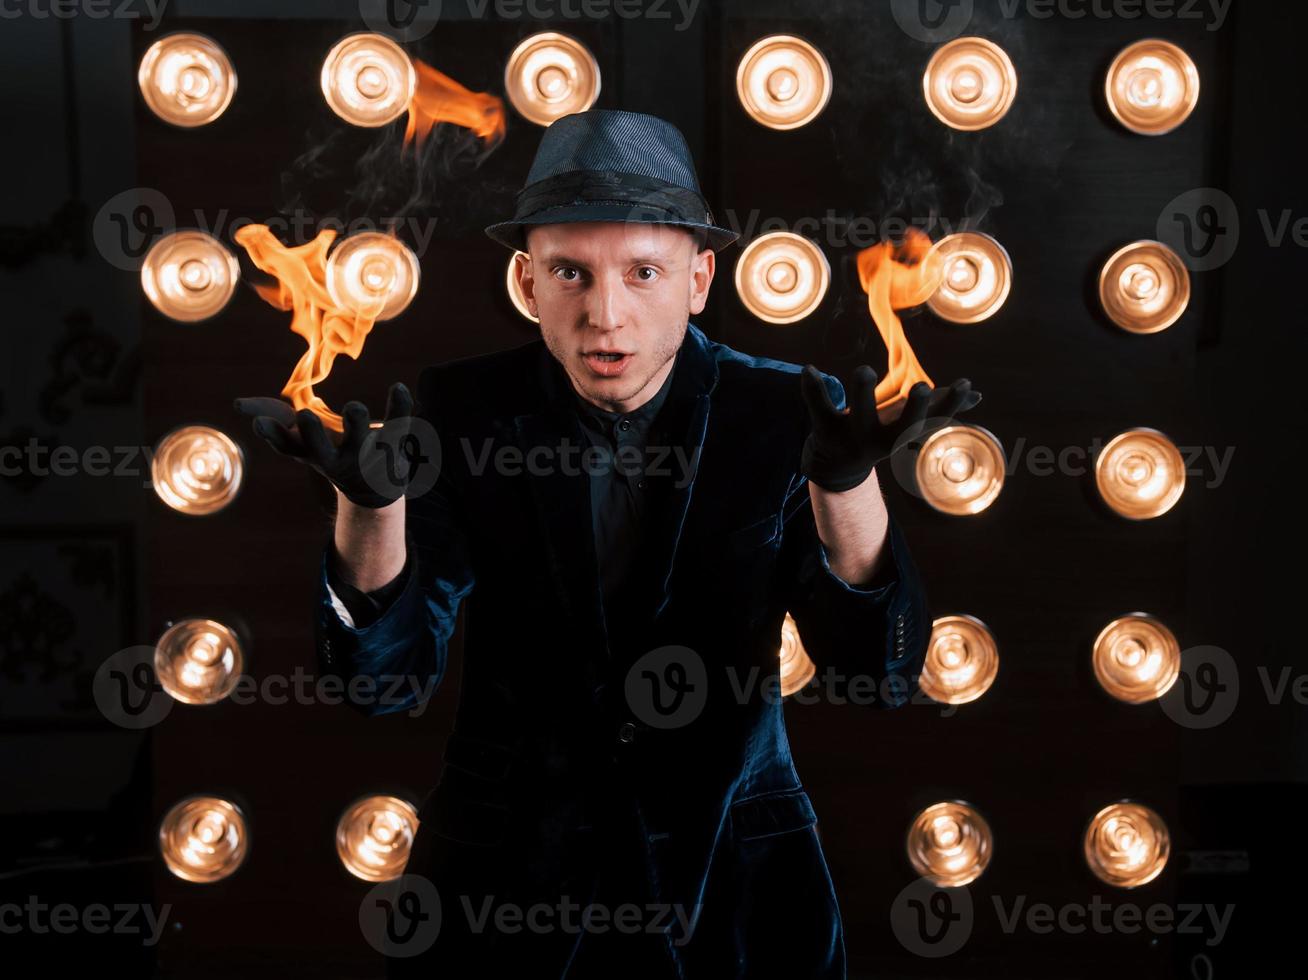 fiamme dalle mani. illusionista professionista in cappello nero, camicia e guanti che giocano con il fuoco foto